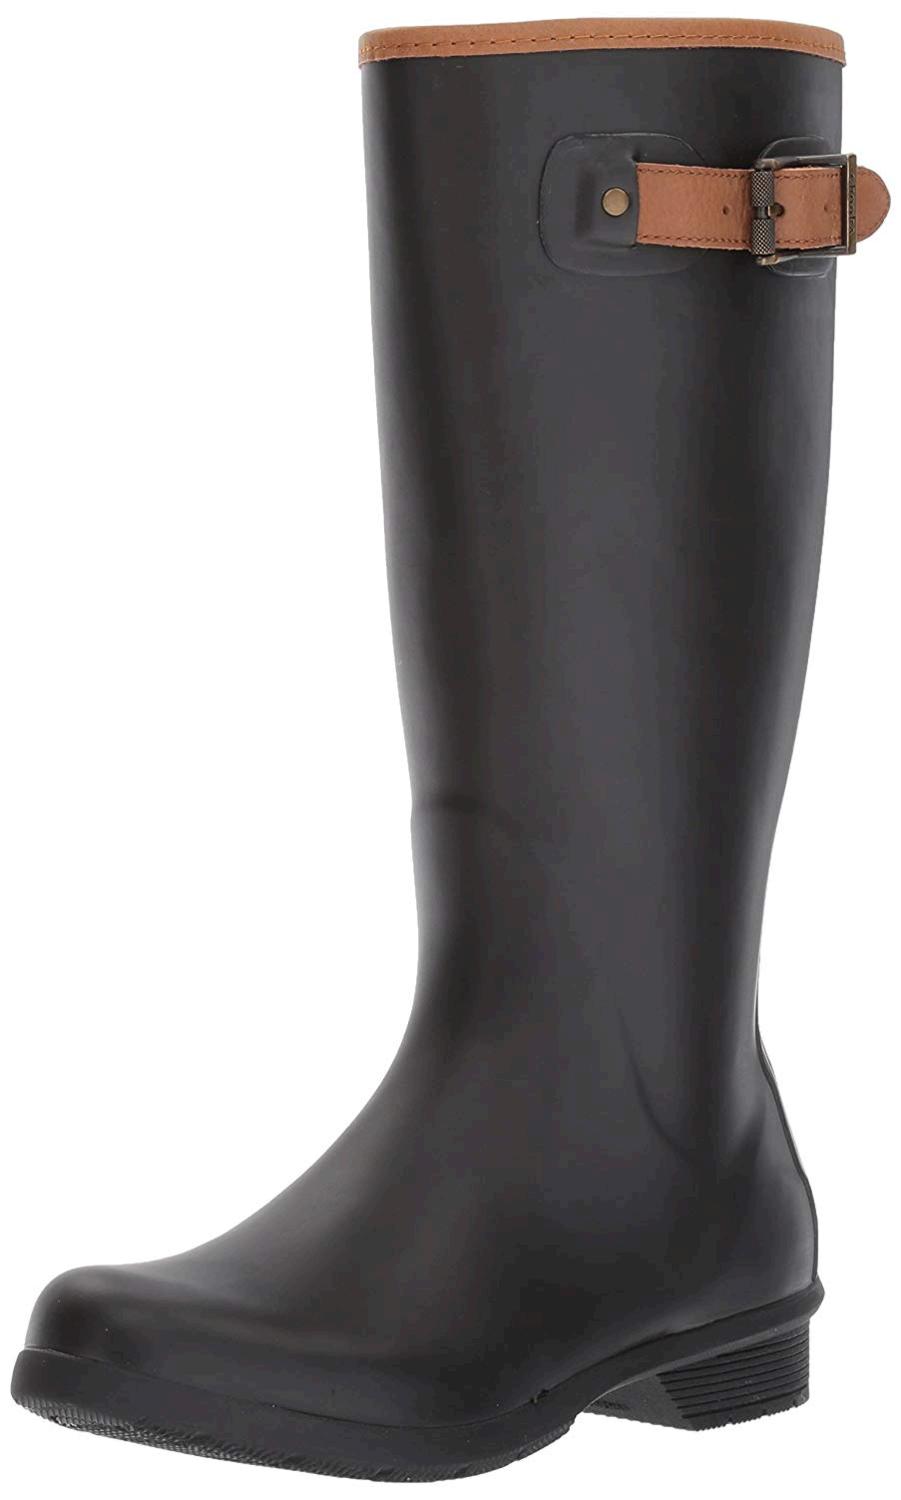 Chooka Women's Tall Memory Foam Rain Boot, Black, Size 9.0 Fp7K | eBay